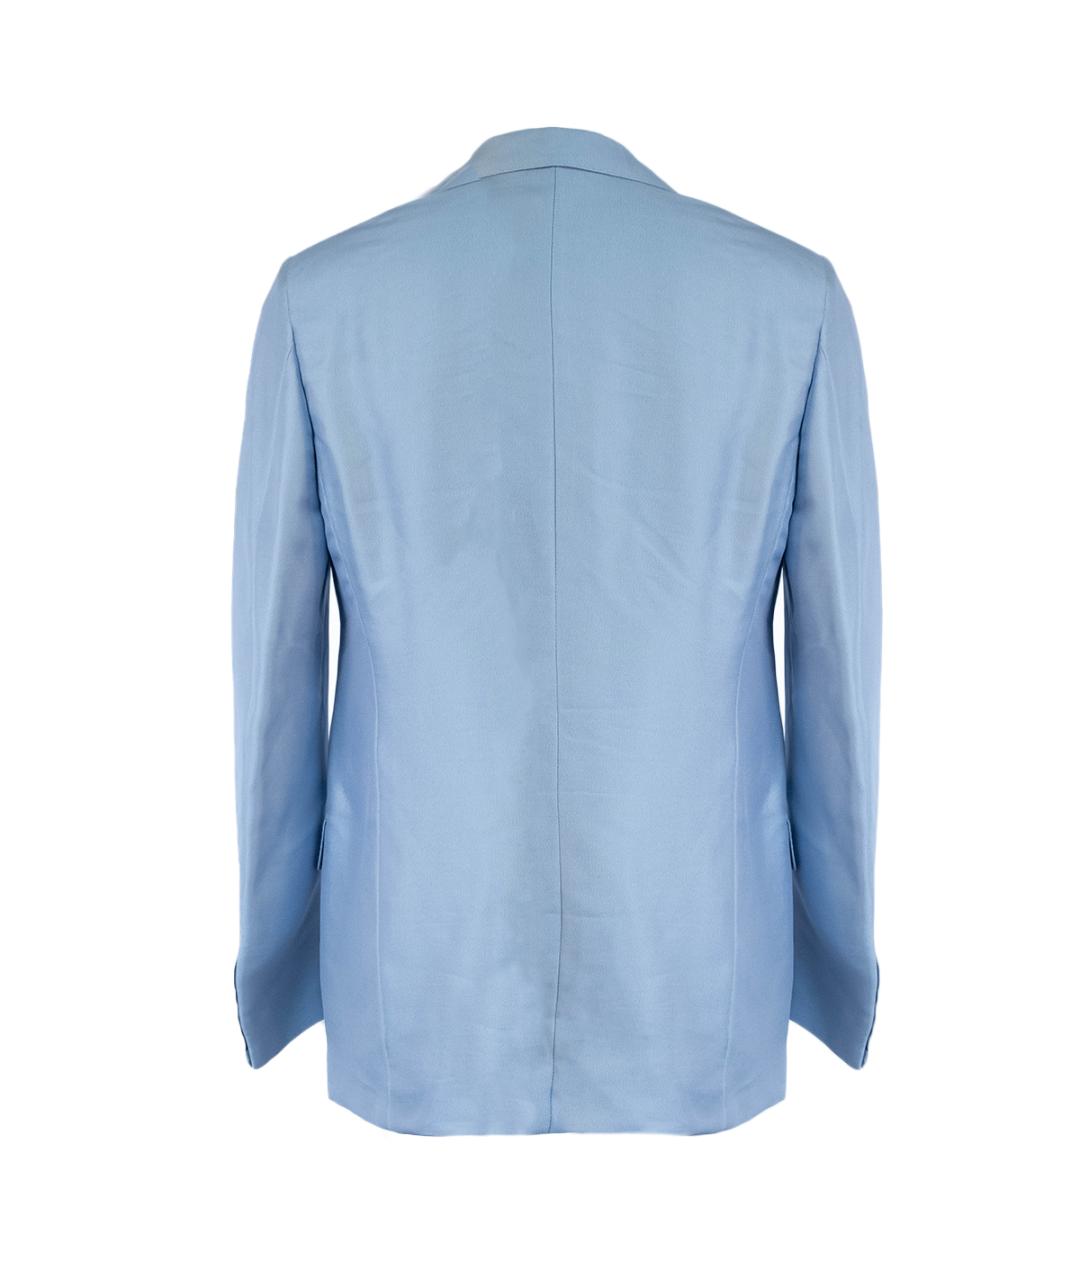 GIANFRANCO FERRE Голубой вискозный пиджак, фото 2